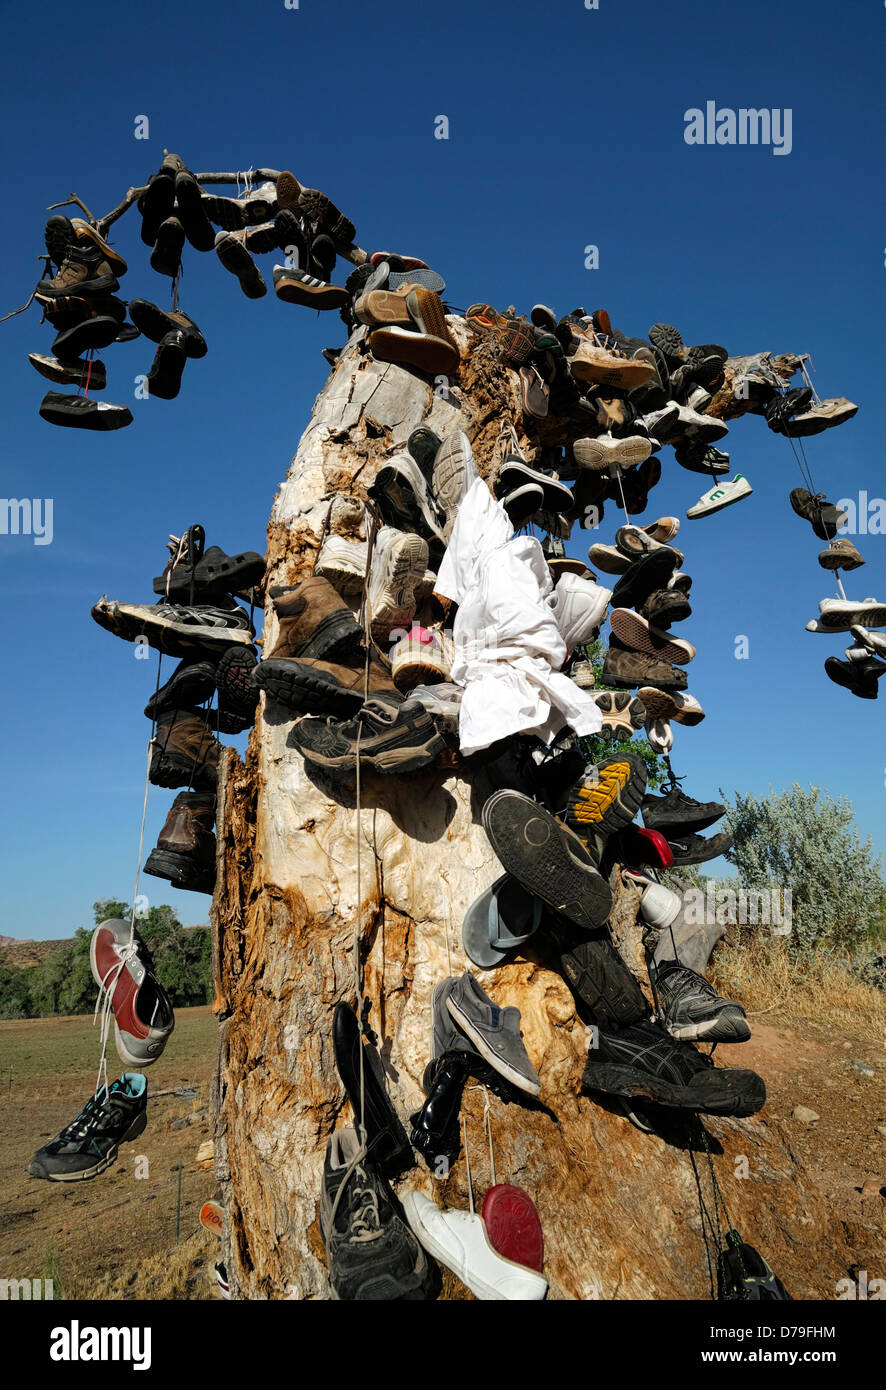 Des centaines de chaussures bottes coureurs de pendre chaussures morts cimetière commémorer marqueur mark site vierge Utah shoe tree Banque D'Images